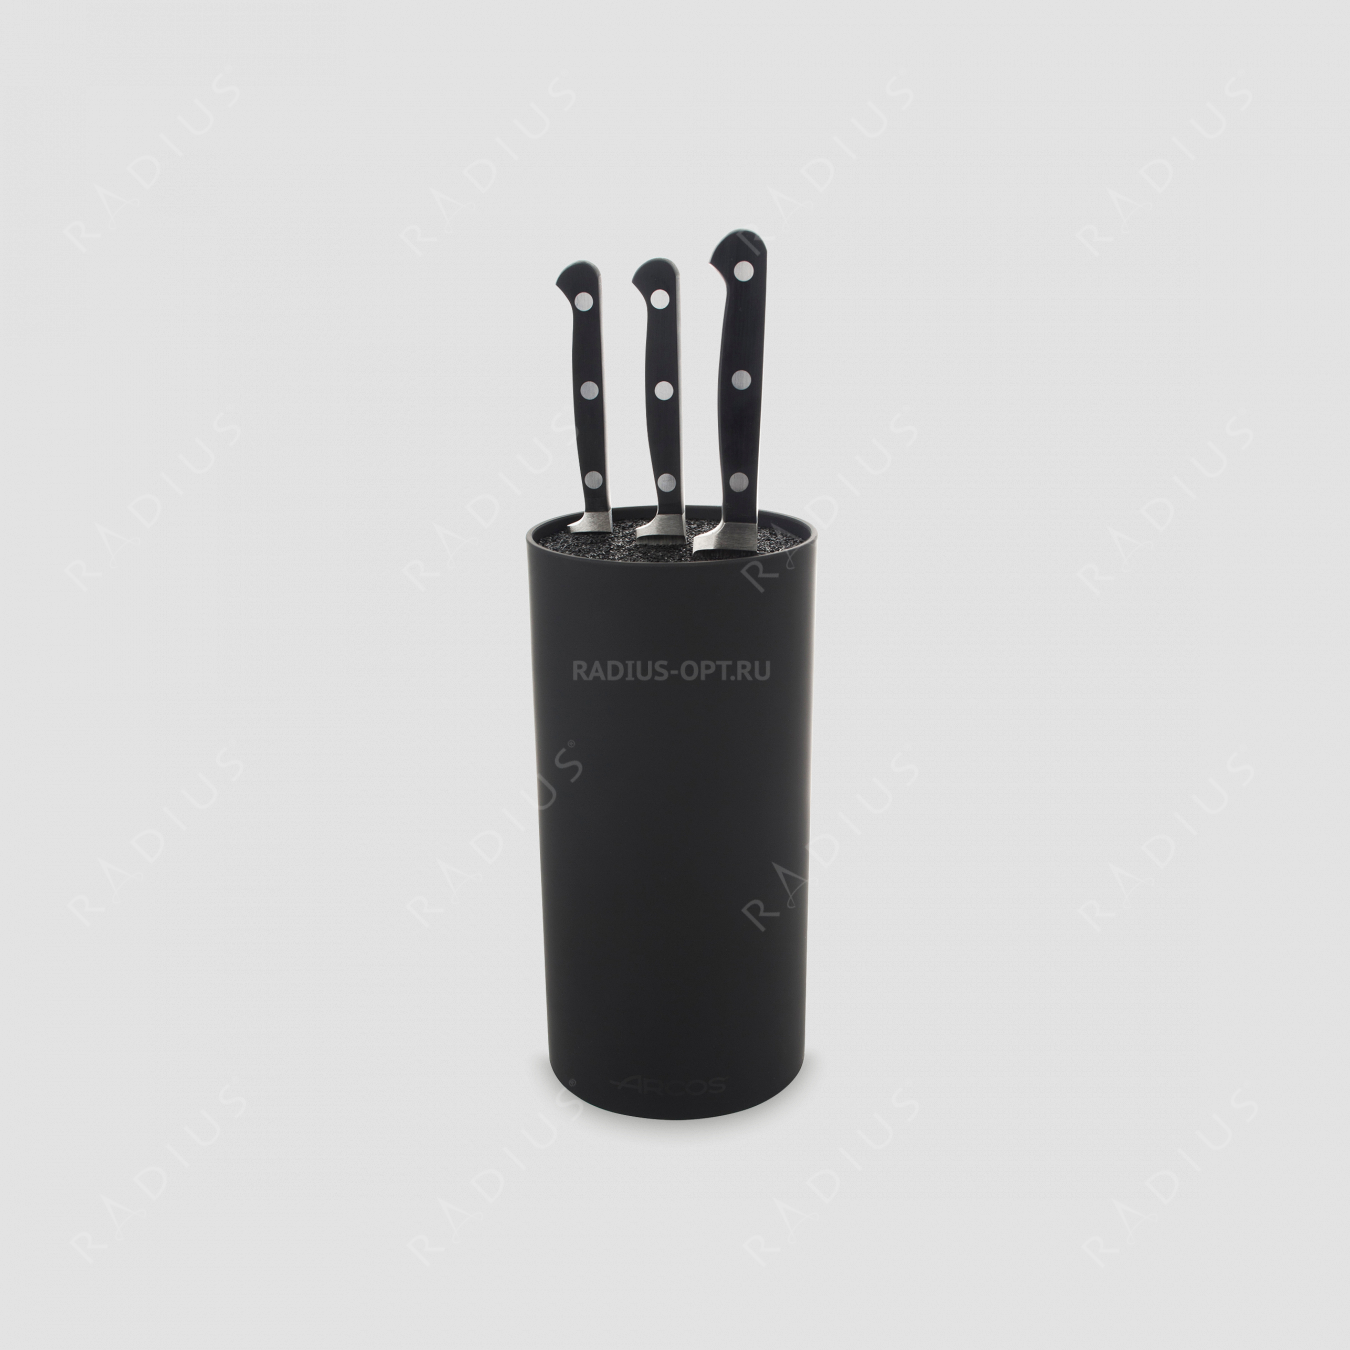 Набор из 3-х кухонных ножей с черной подставкой, серия Clasica, ARCOS, Испания